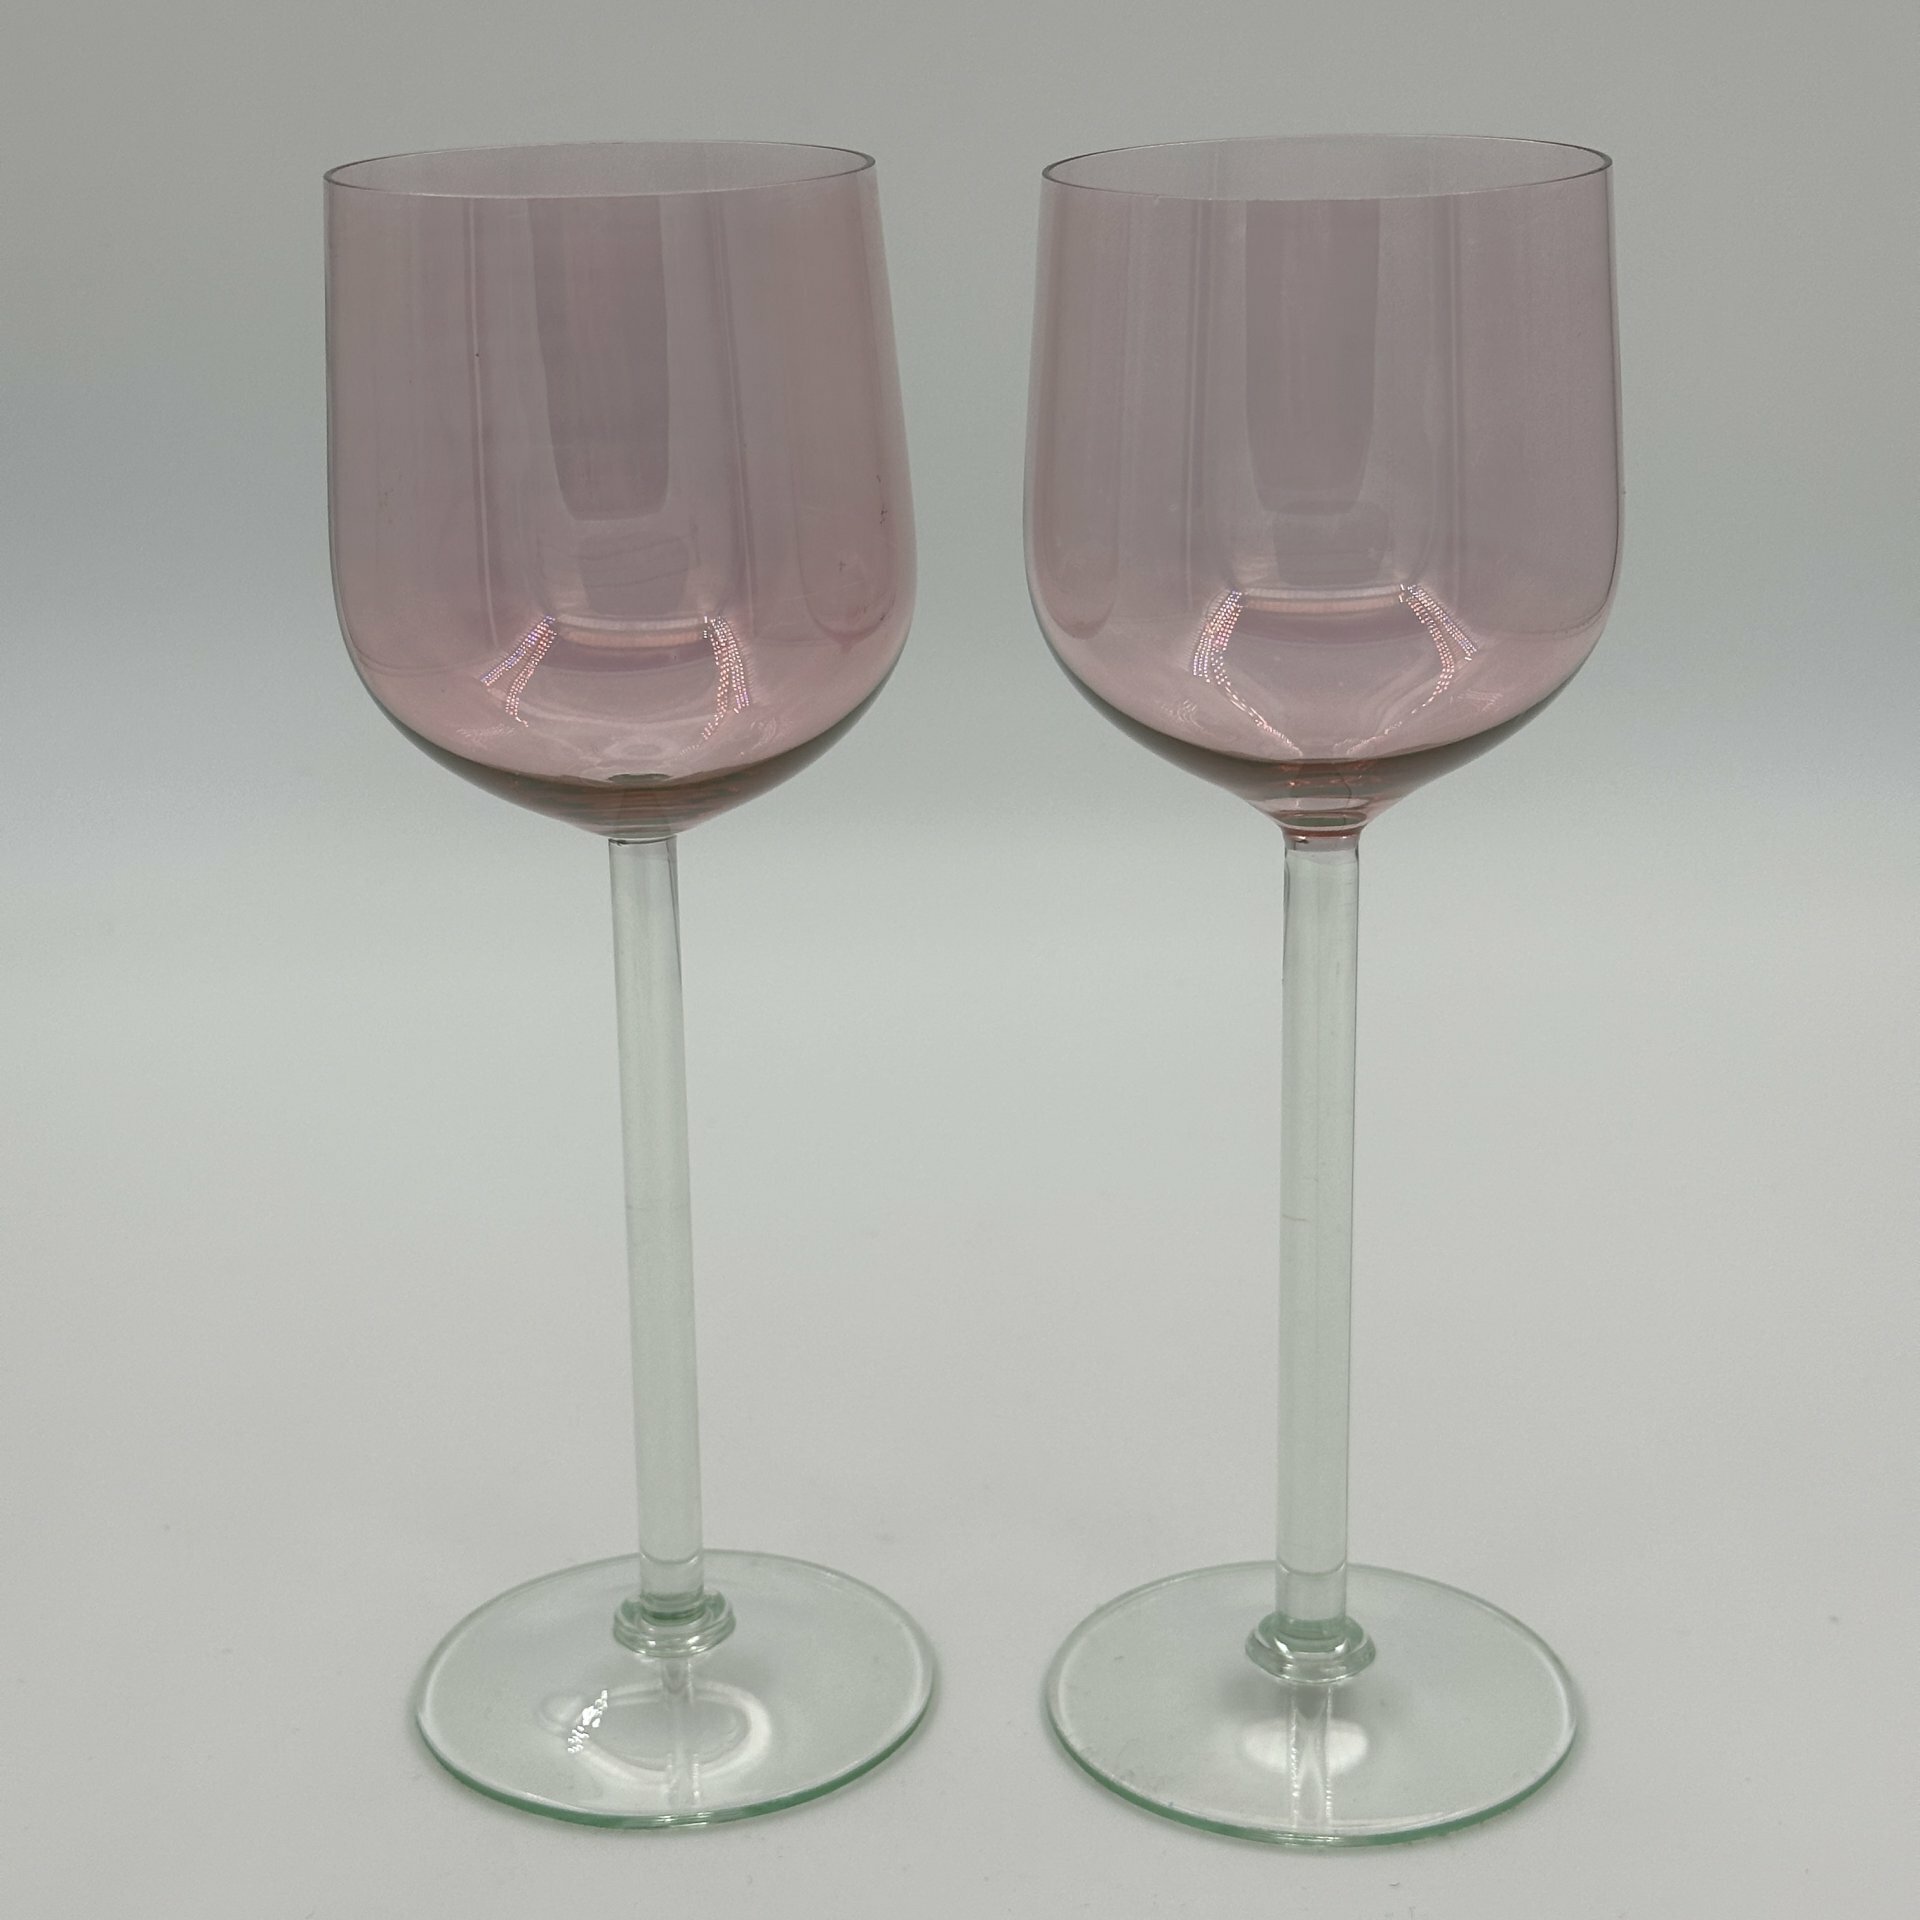 Набор из двух винных бокалов розового оттенка, стекло, люстр